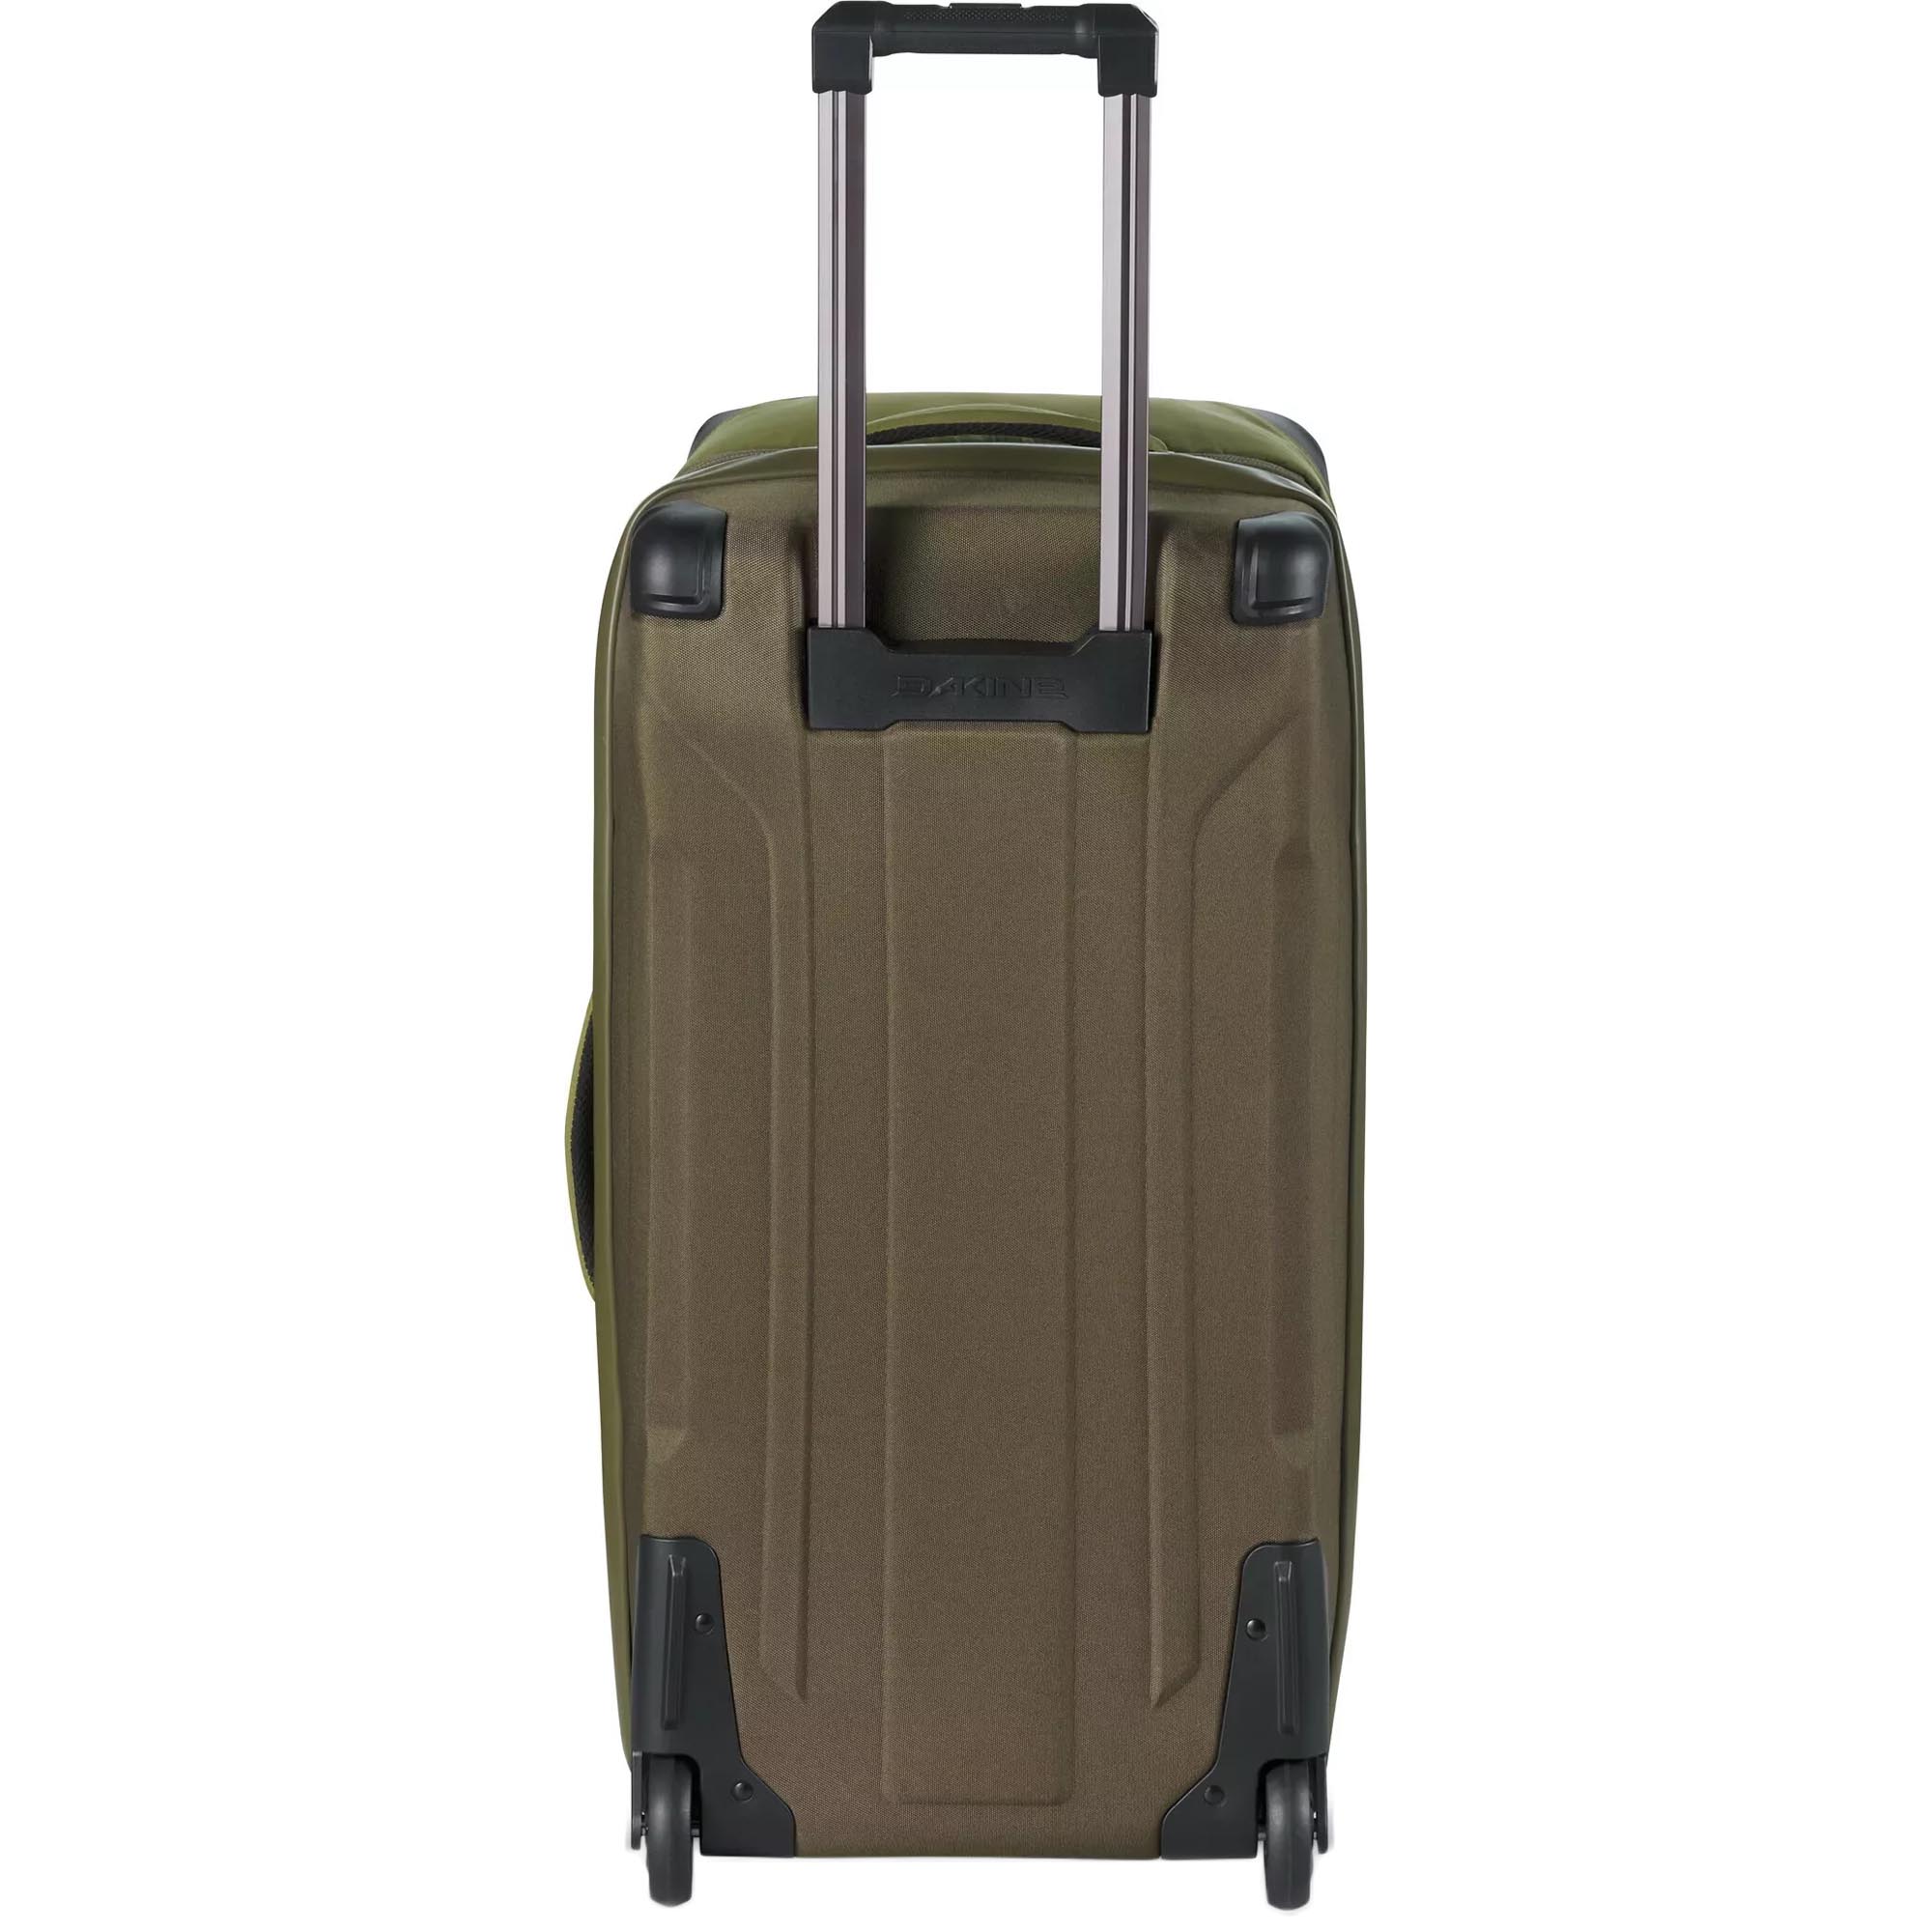 Dakine Split Roller 85 Wheelie Bag Suitcase